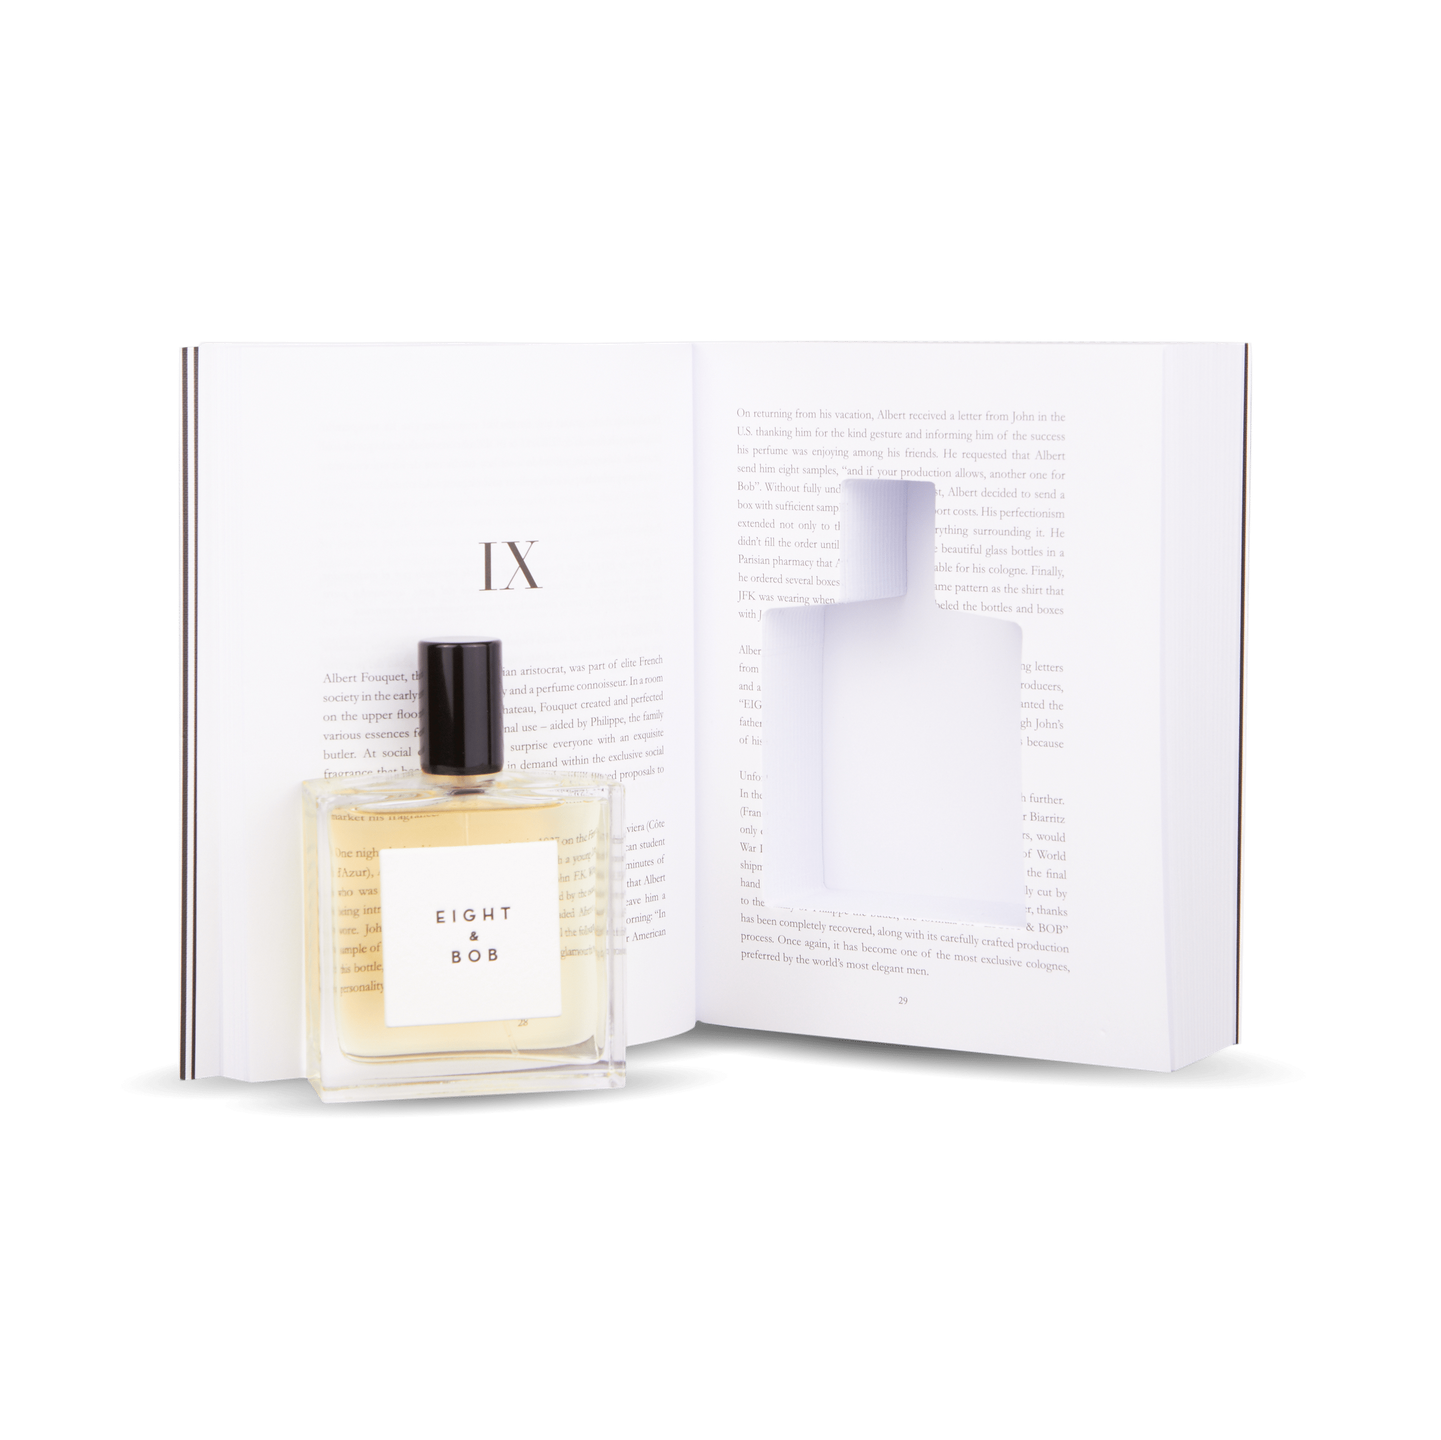 An Eight Bob Perfume Original 100 ml Inside Book rests on an open book.